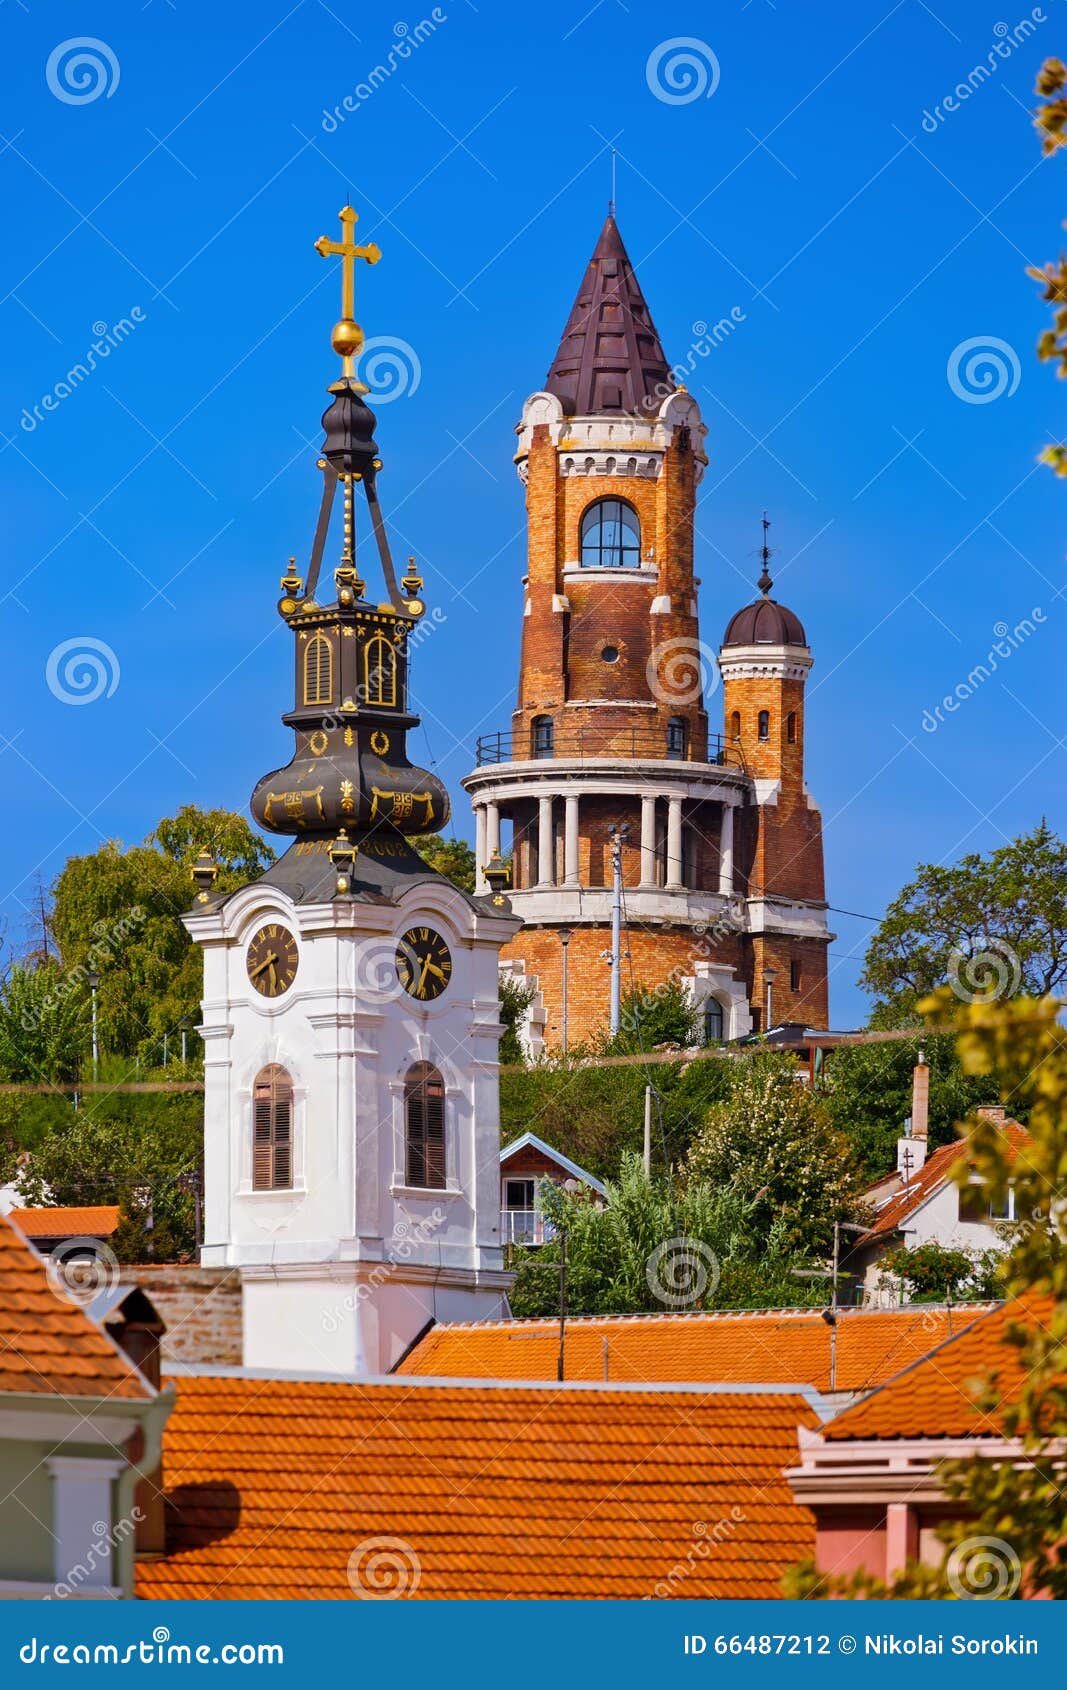 gardos tower in zemun - belgrade serbia